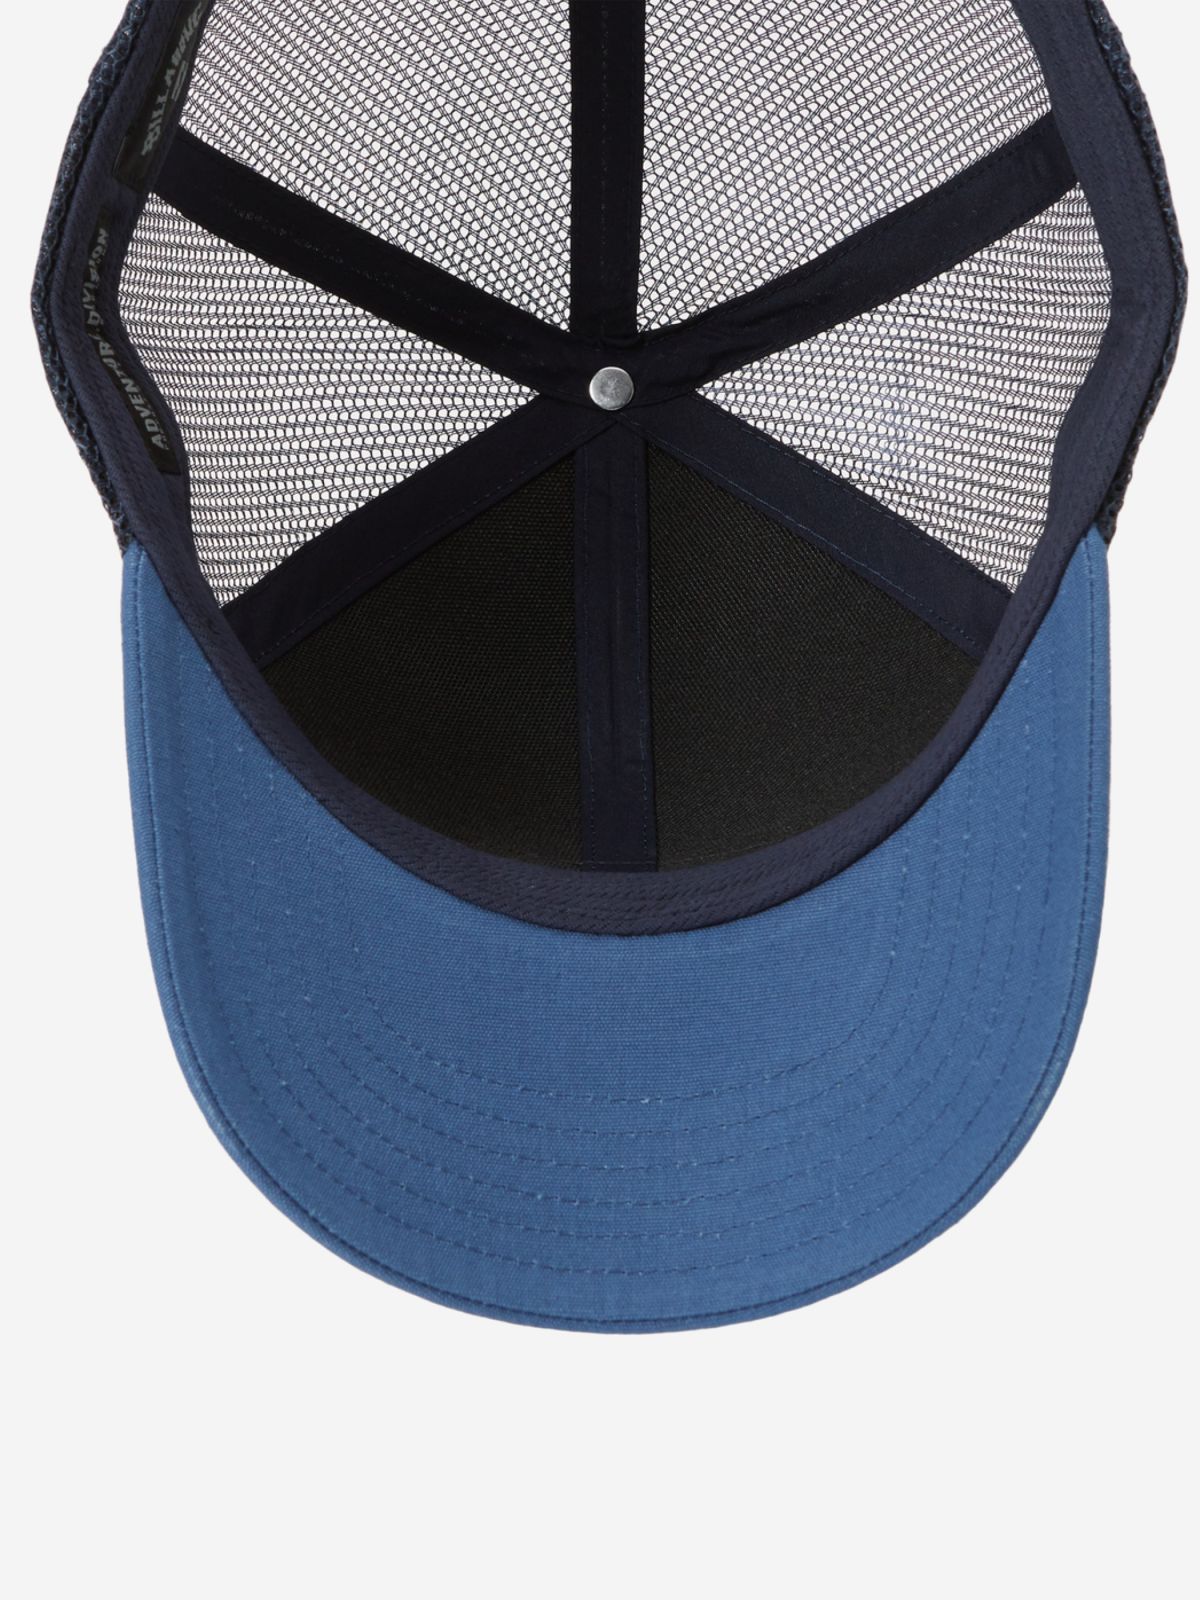  כובע מצחייה משולב רשת עם לוגו / גברים של BILLABONG